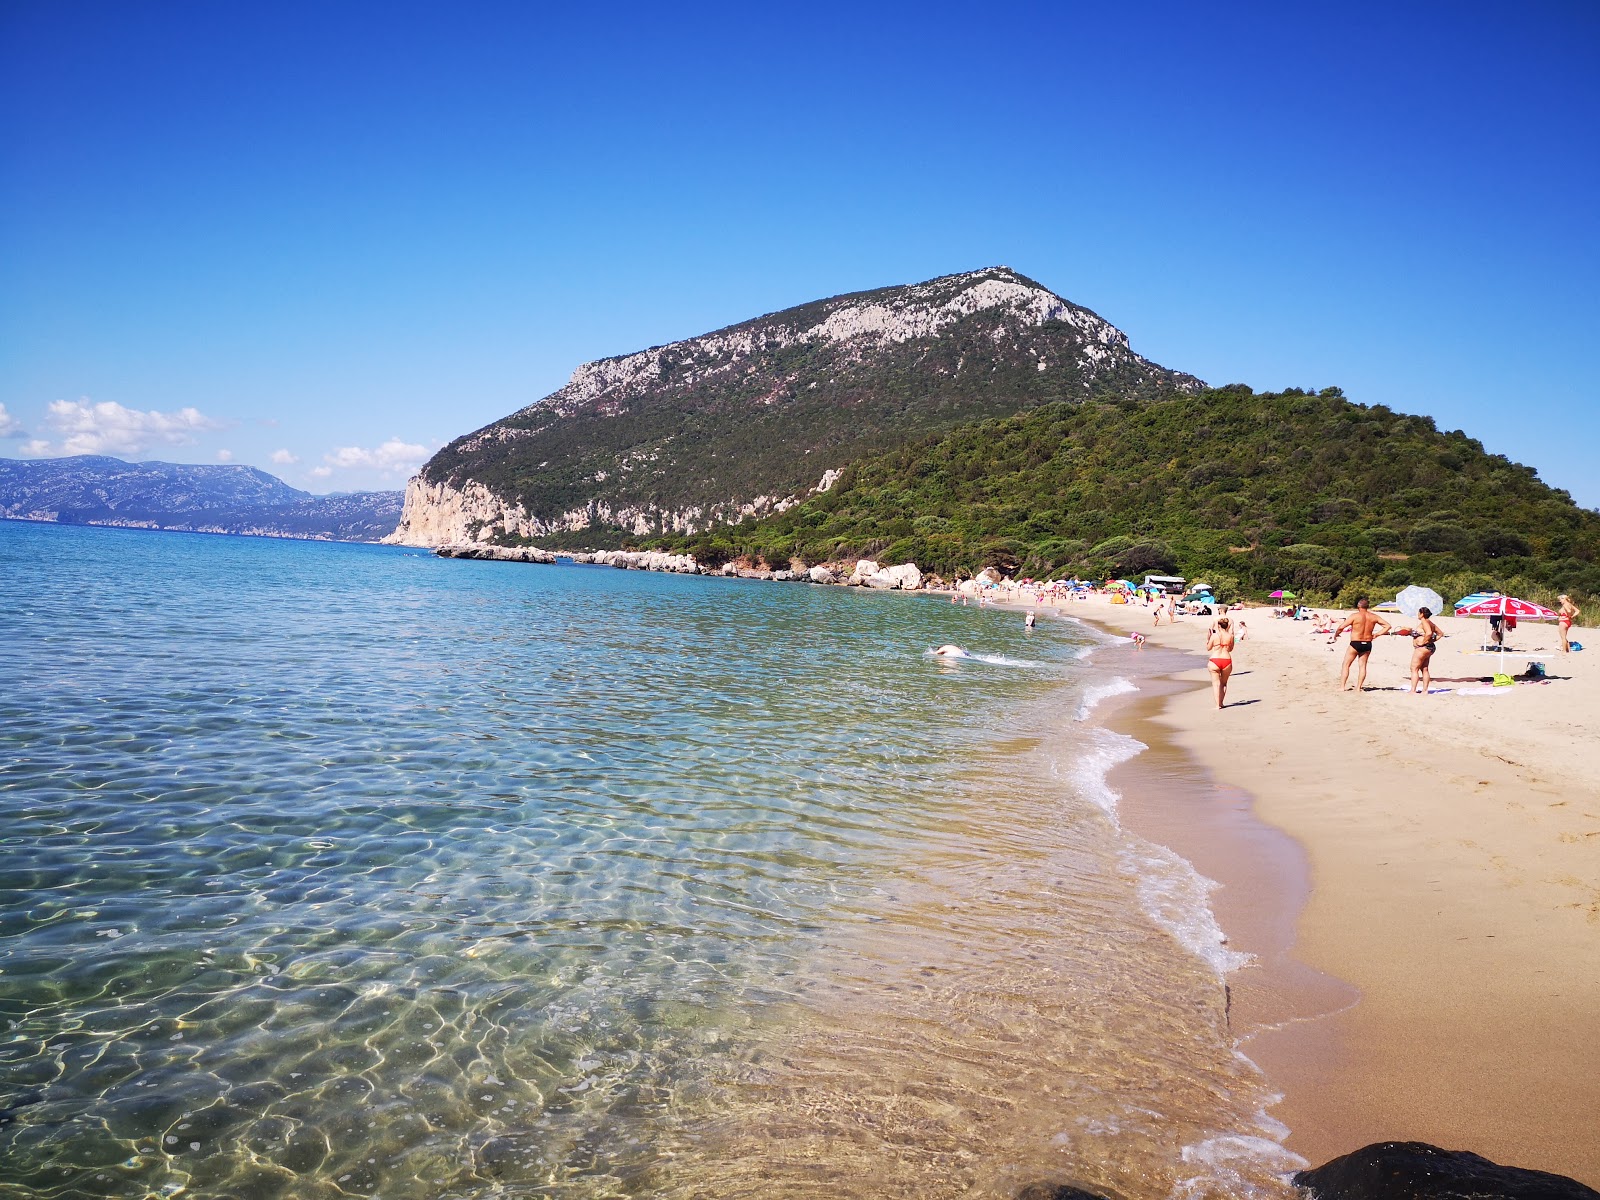 Foto de Spiaggia di Cartoe ubicado en área natural